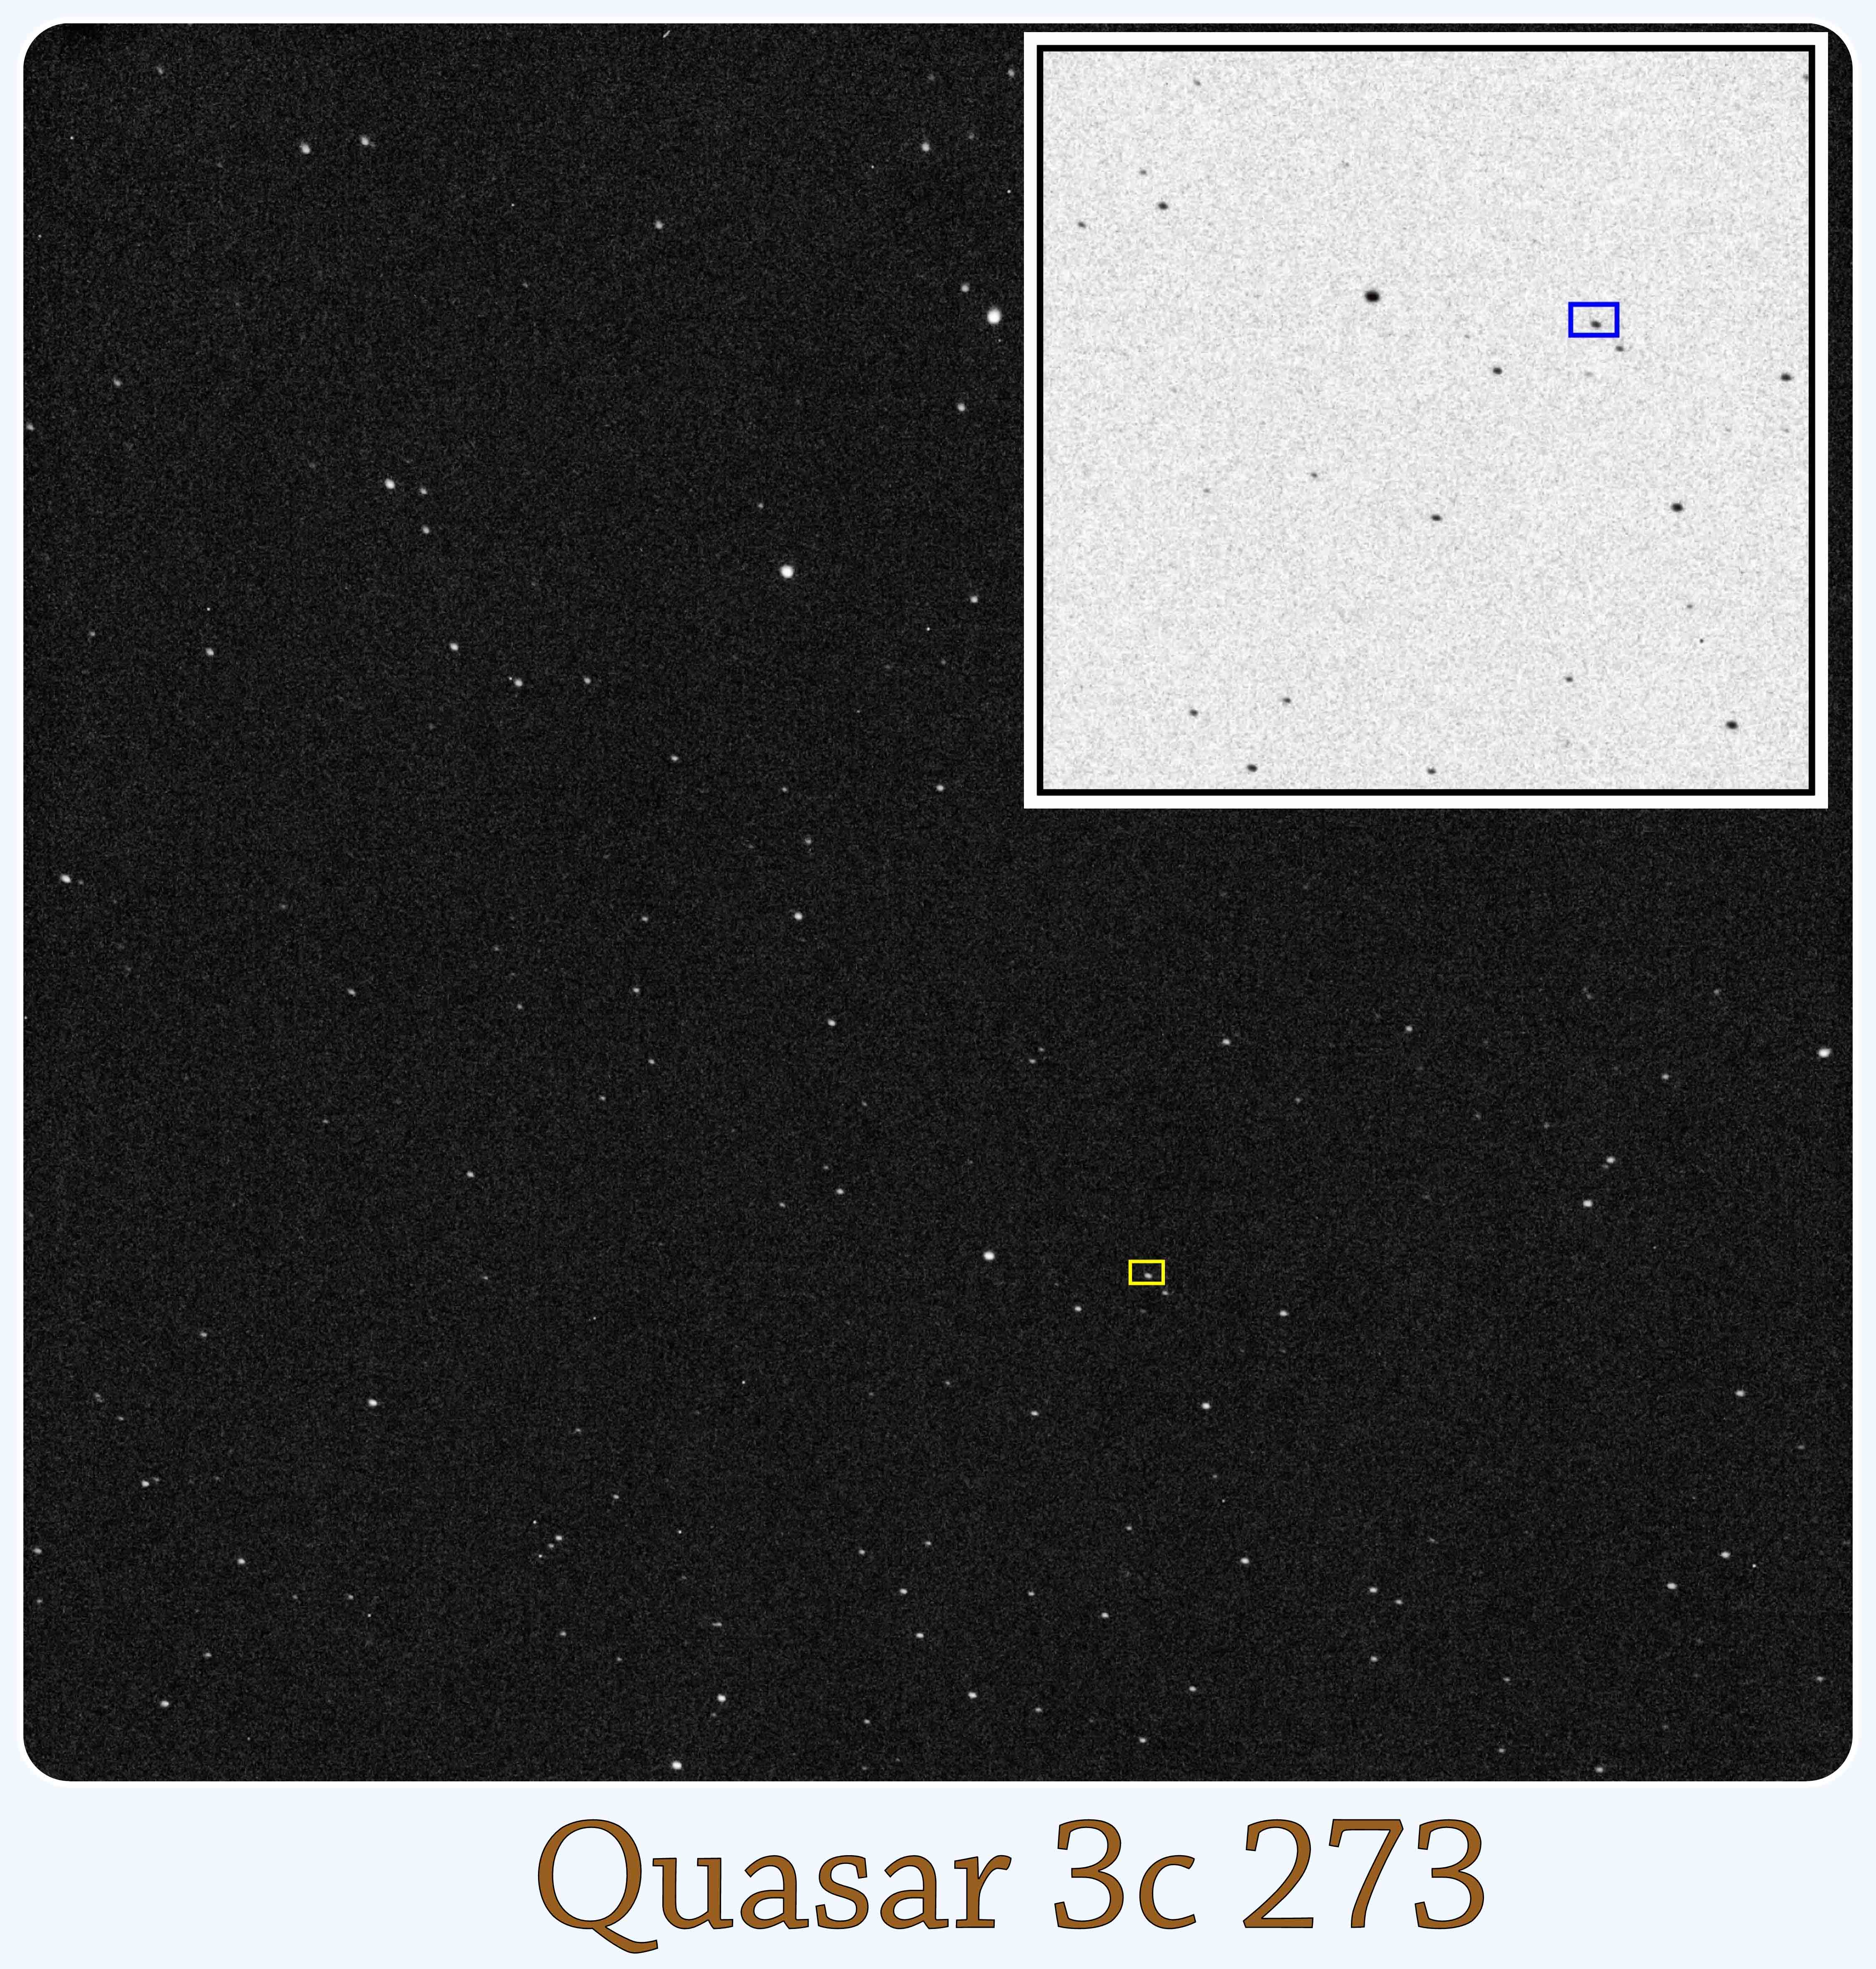 quasar2.jpg.261830858a9b422e0c9a977eca7e